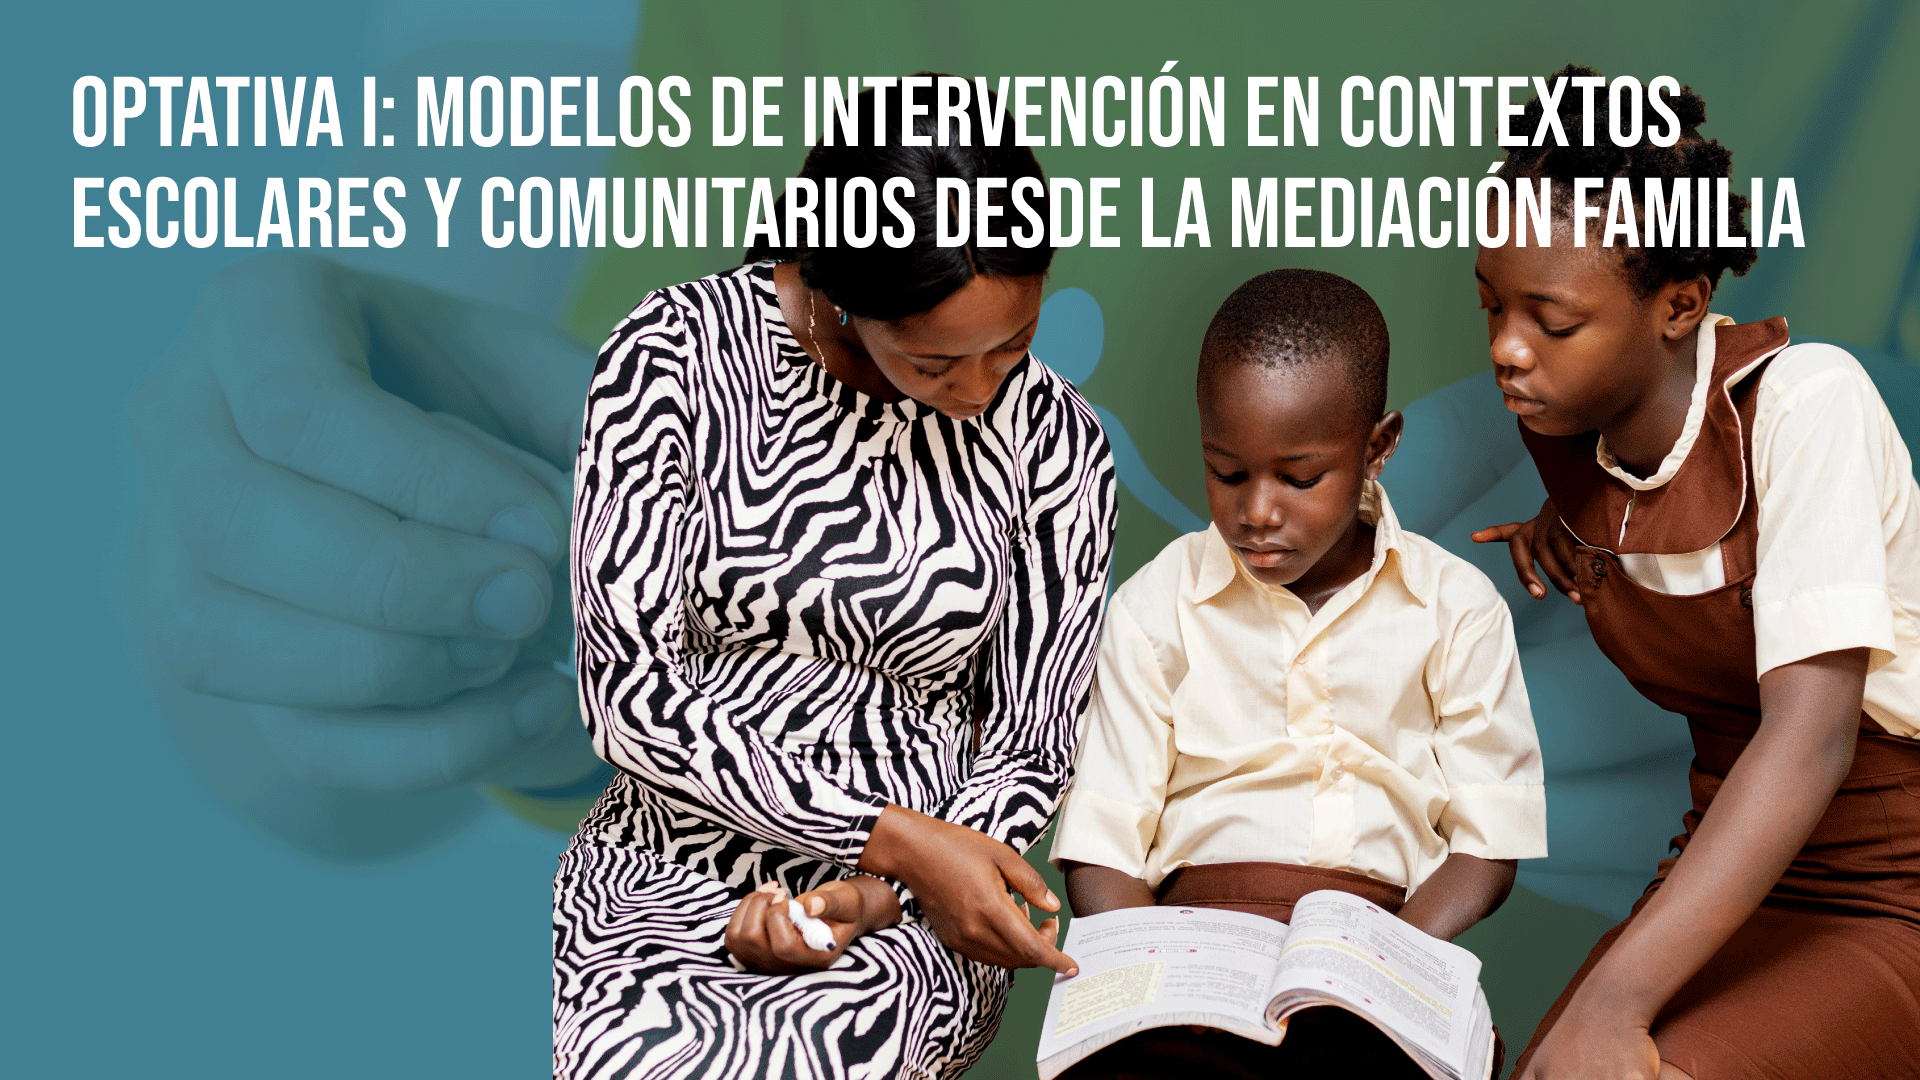 Optativa I: Modelos de Intervención en Contextos Escolares y Comunitarios desde la Mediación Familiar